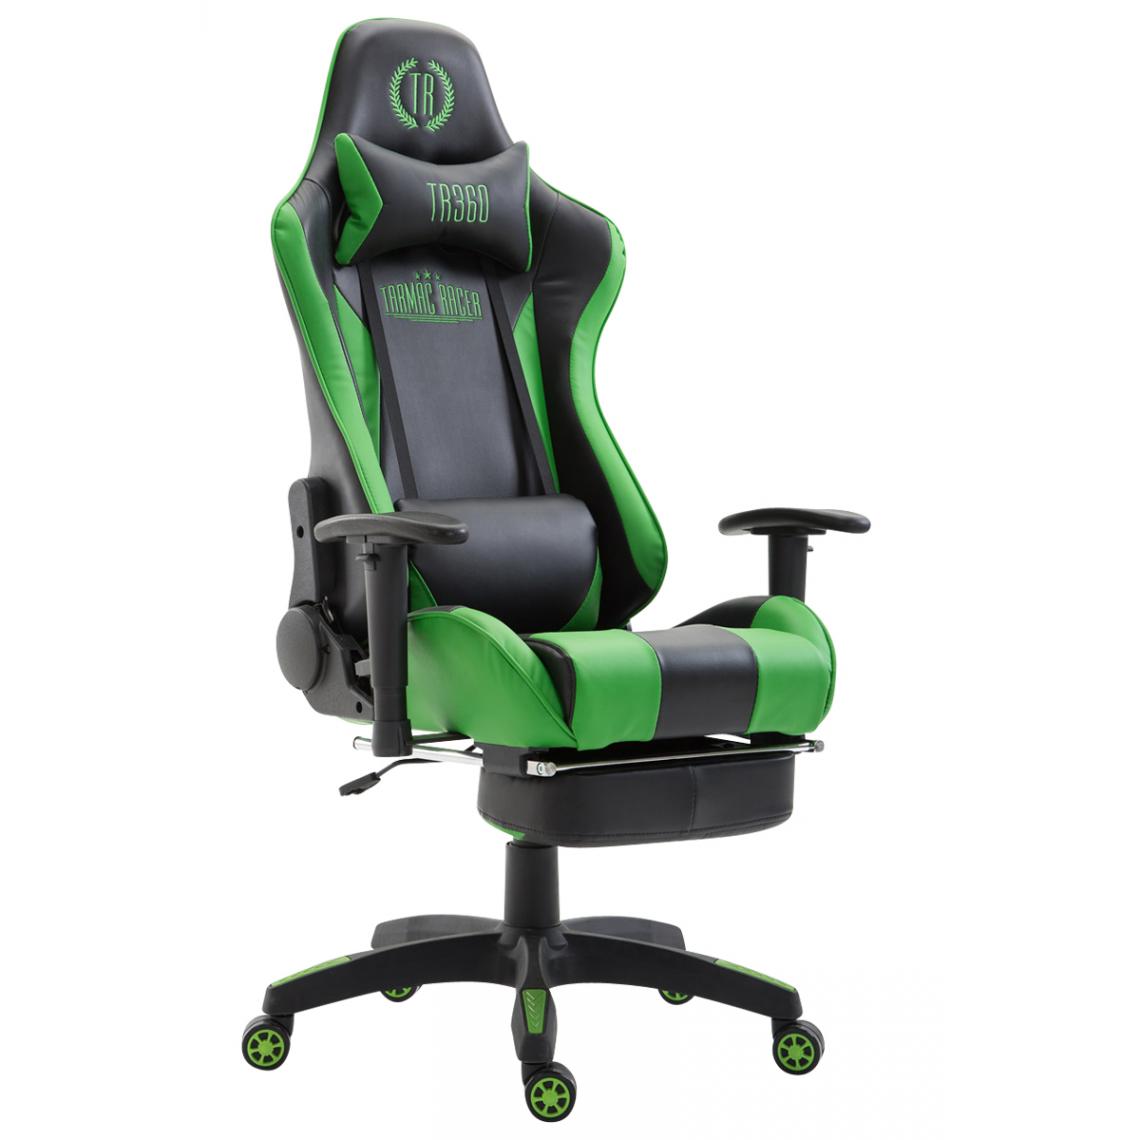 Icaverne - Admirable Chaise de bureau serie Palikir simili cuir avec repose-pieds couleur vert noir - Chaises